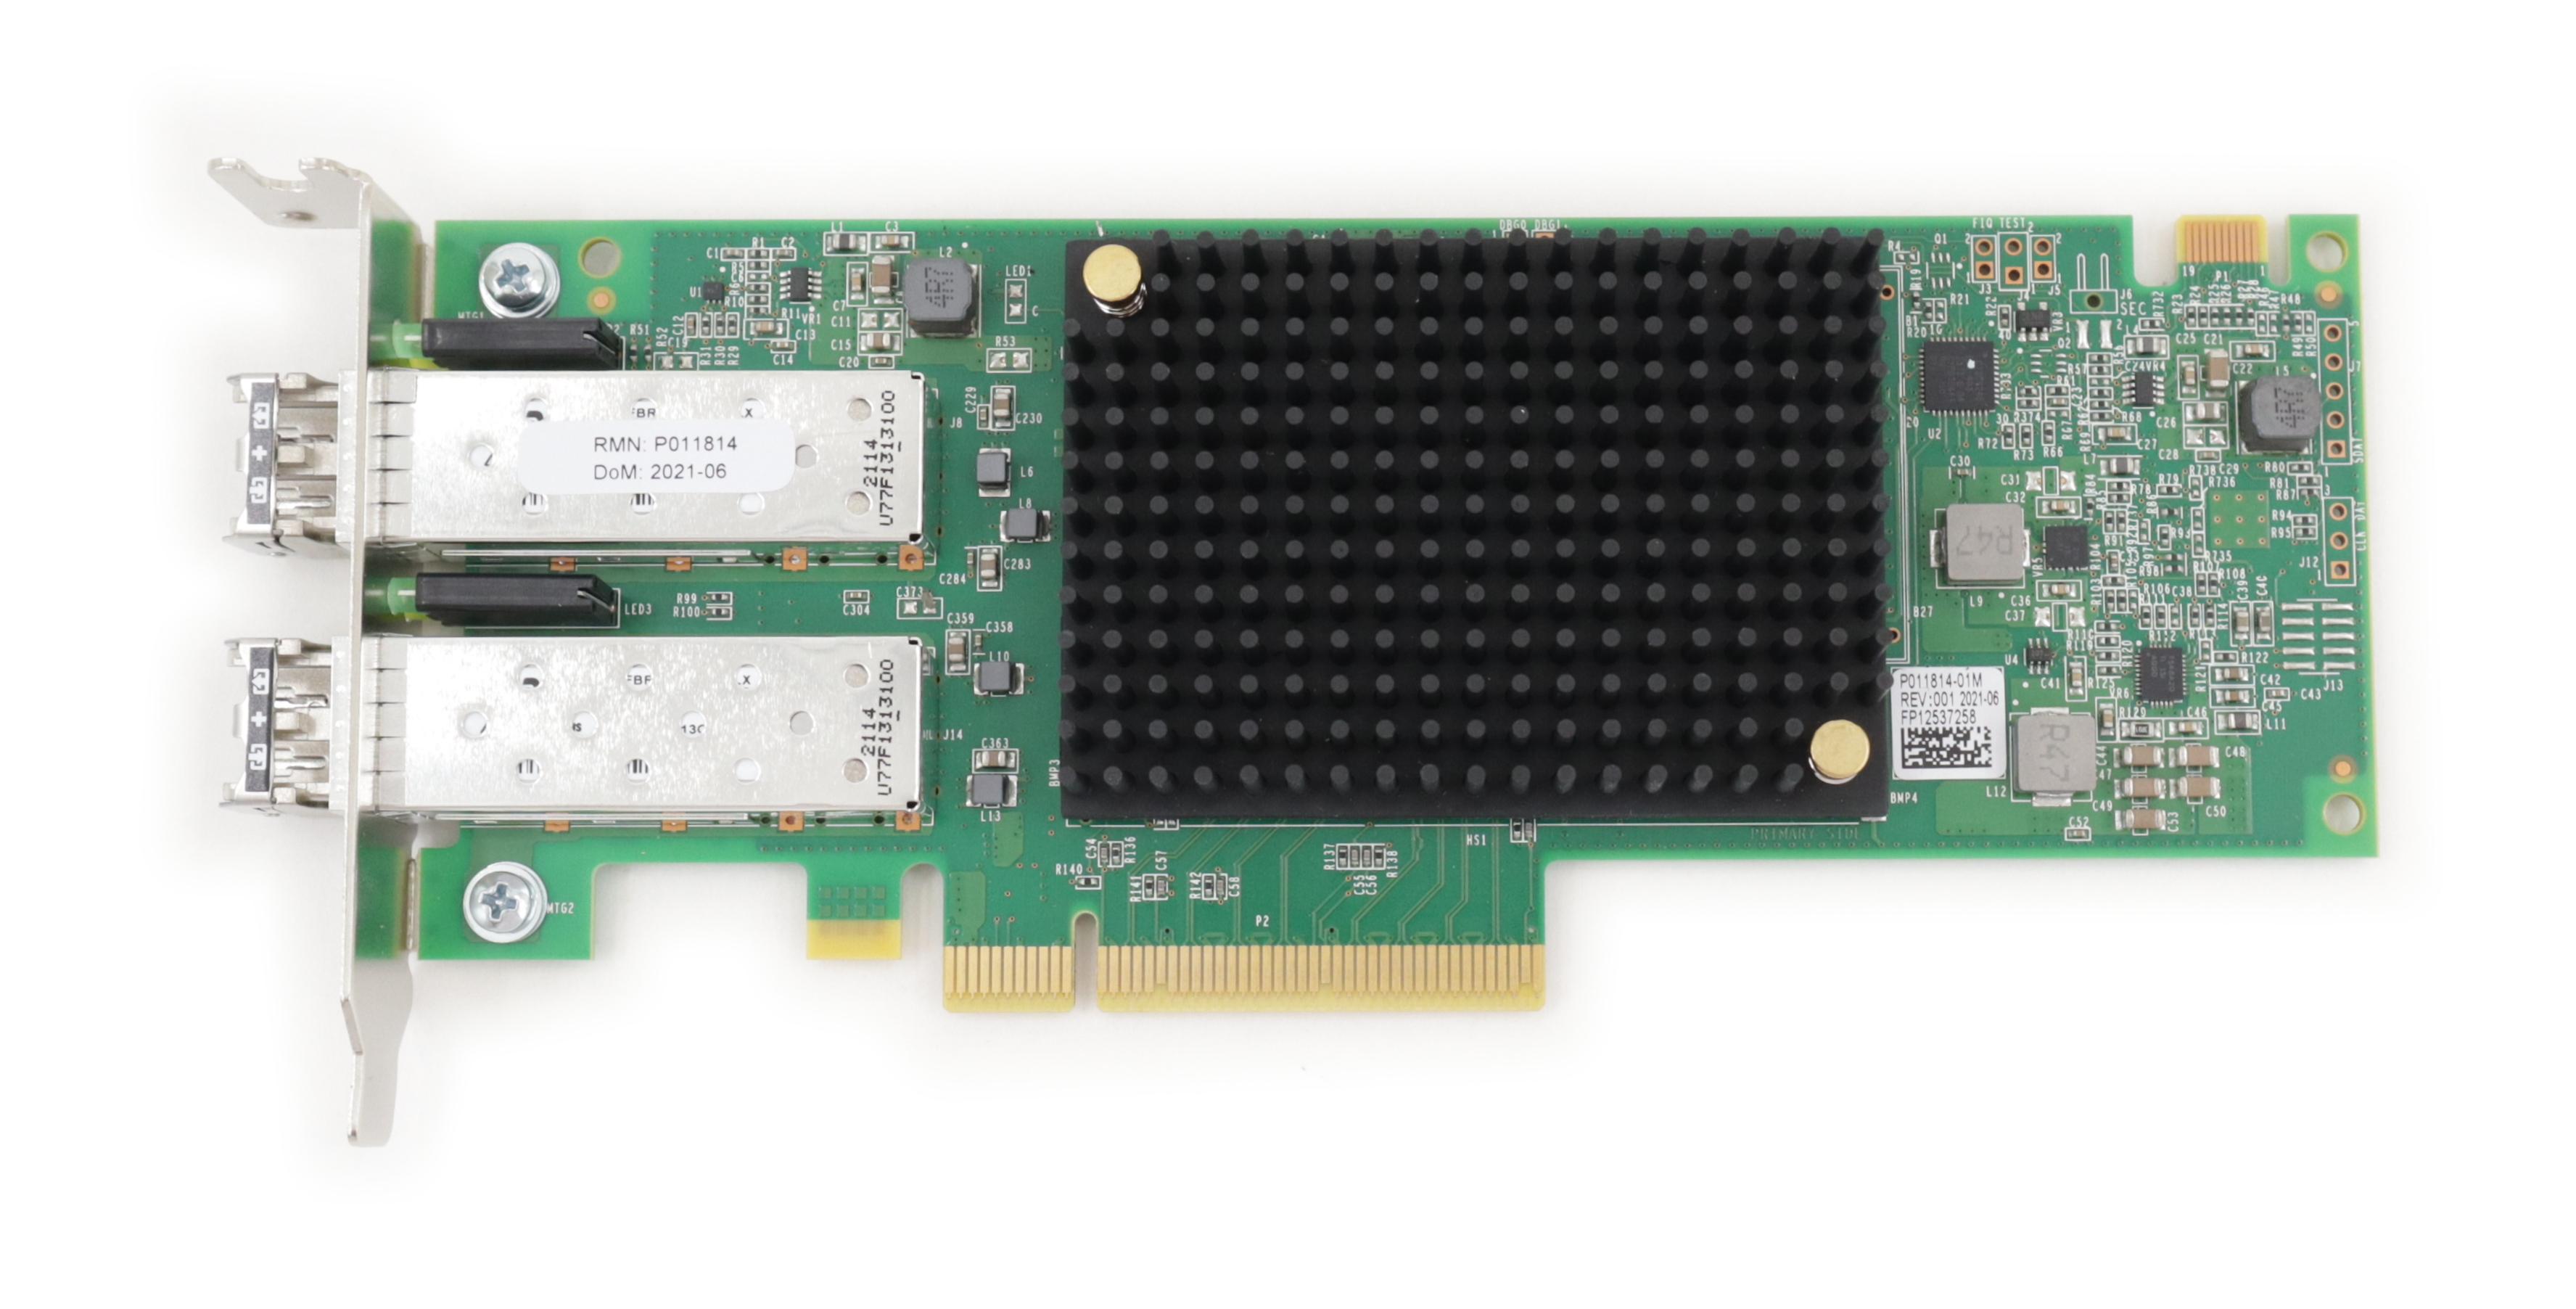 Emulex LPE35002-S4 host bus adapter PCIe 4.0 x8 32GB Fibre Channel 2 Port Gen 7